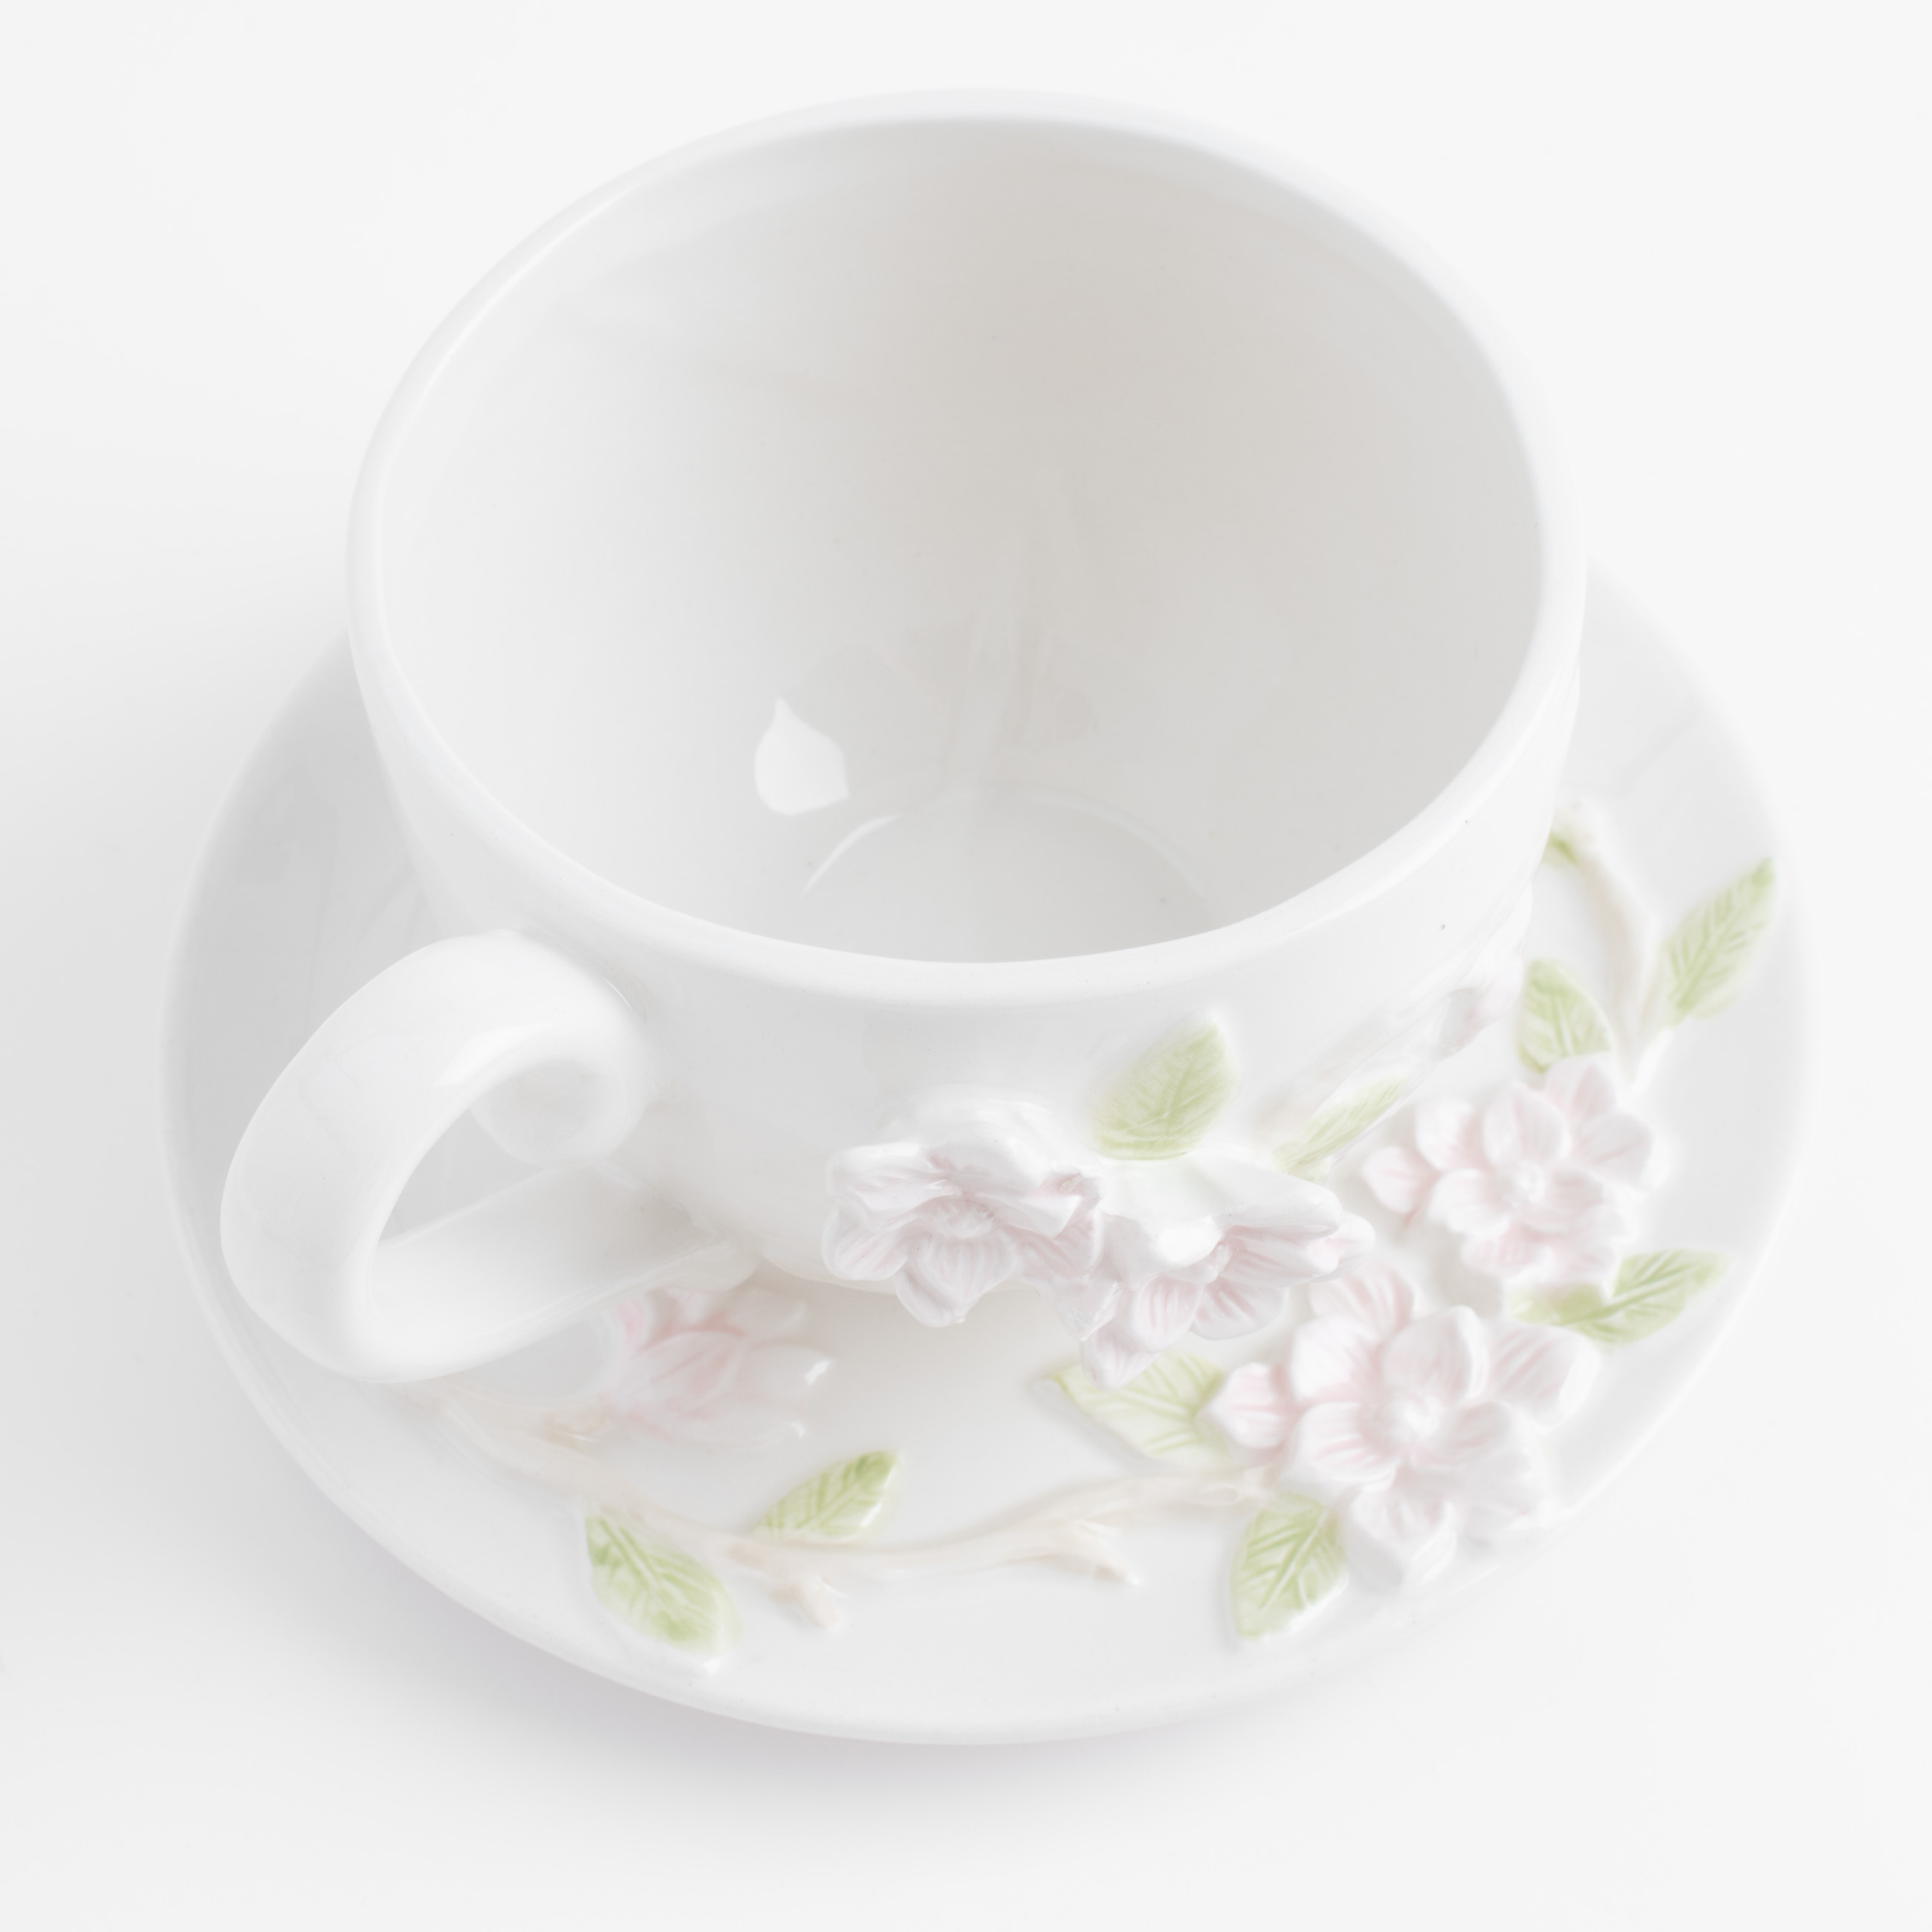 Пара чайная для завтрака, 1 перс, 2 пр, 420 мл, керамика, молочная, Цветы магнолии, Magnolia изображение № 2